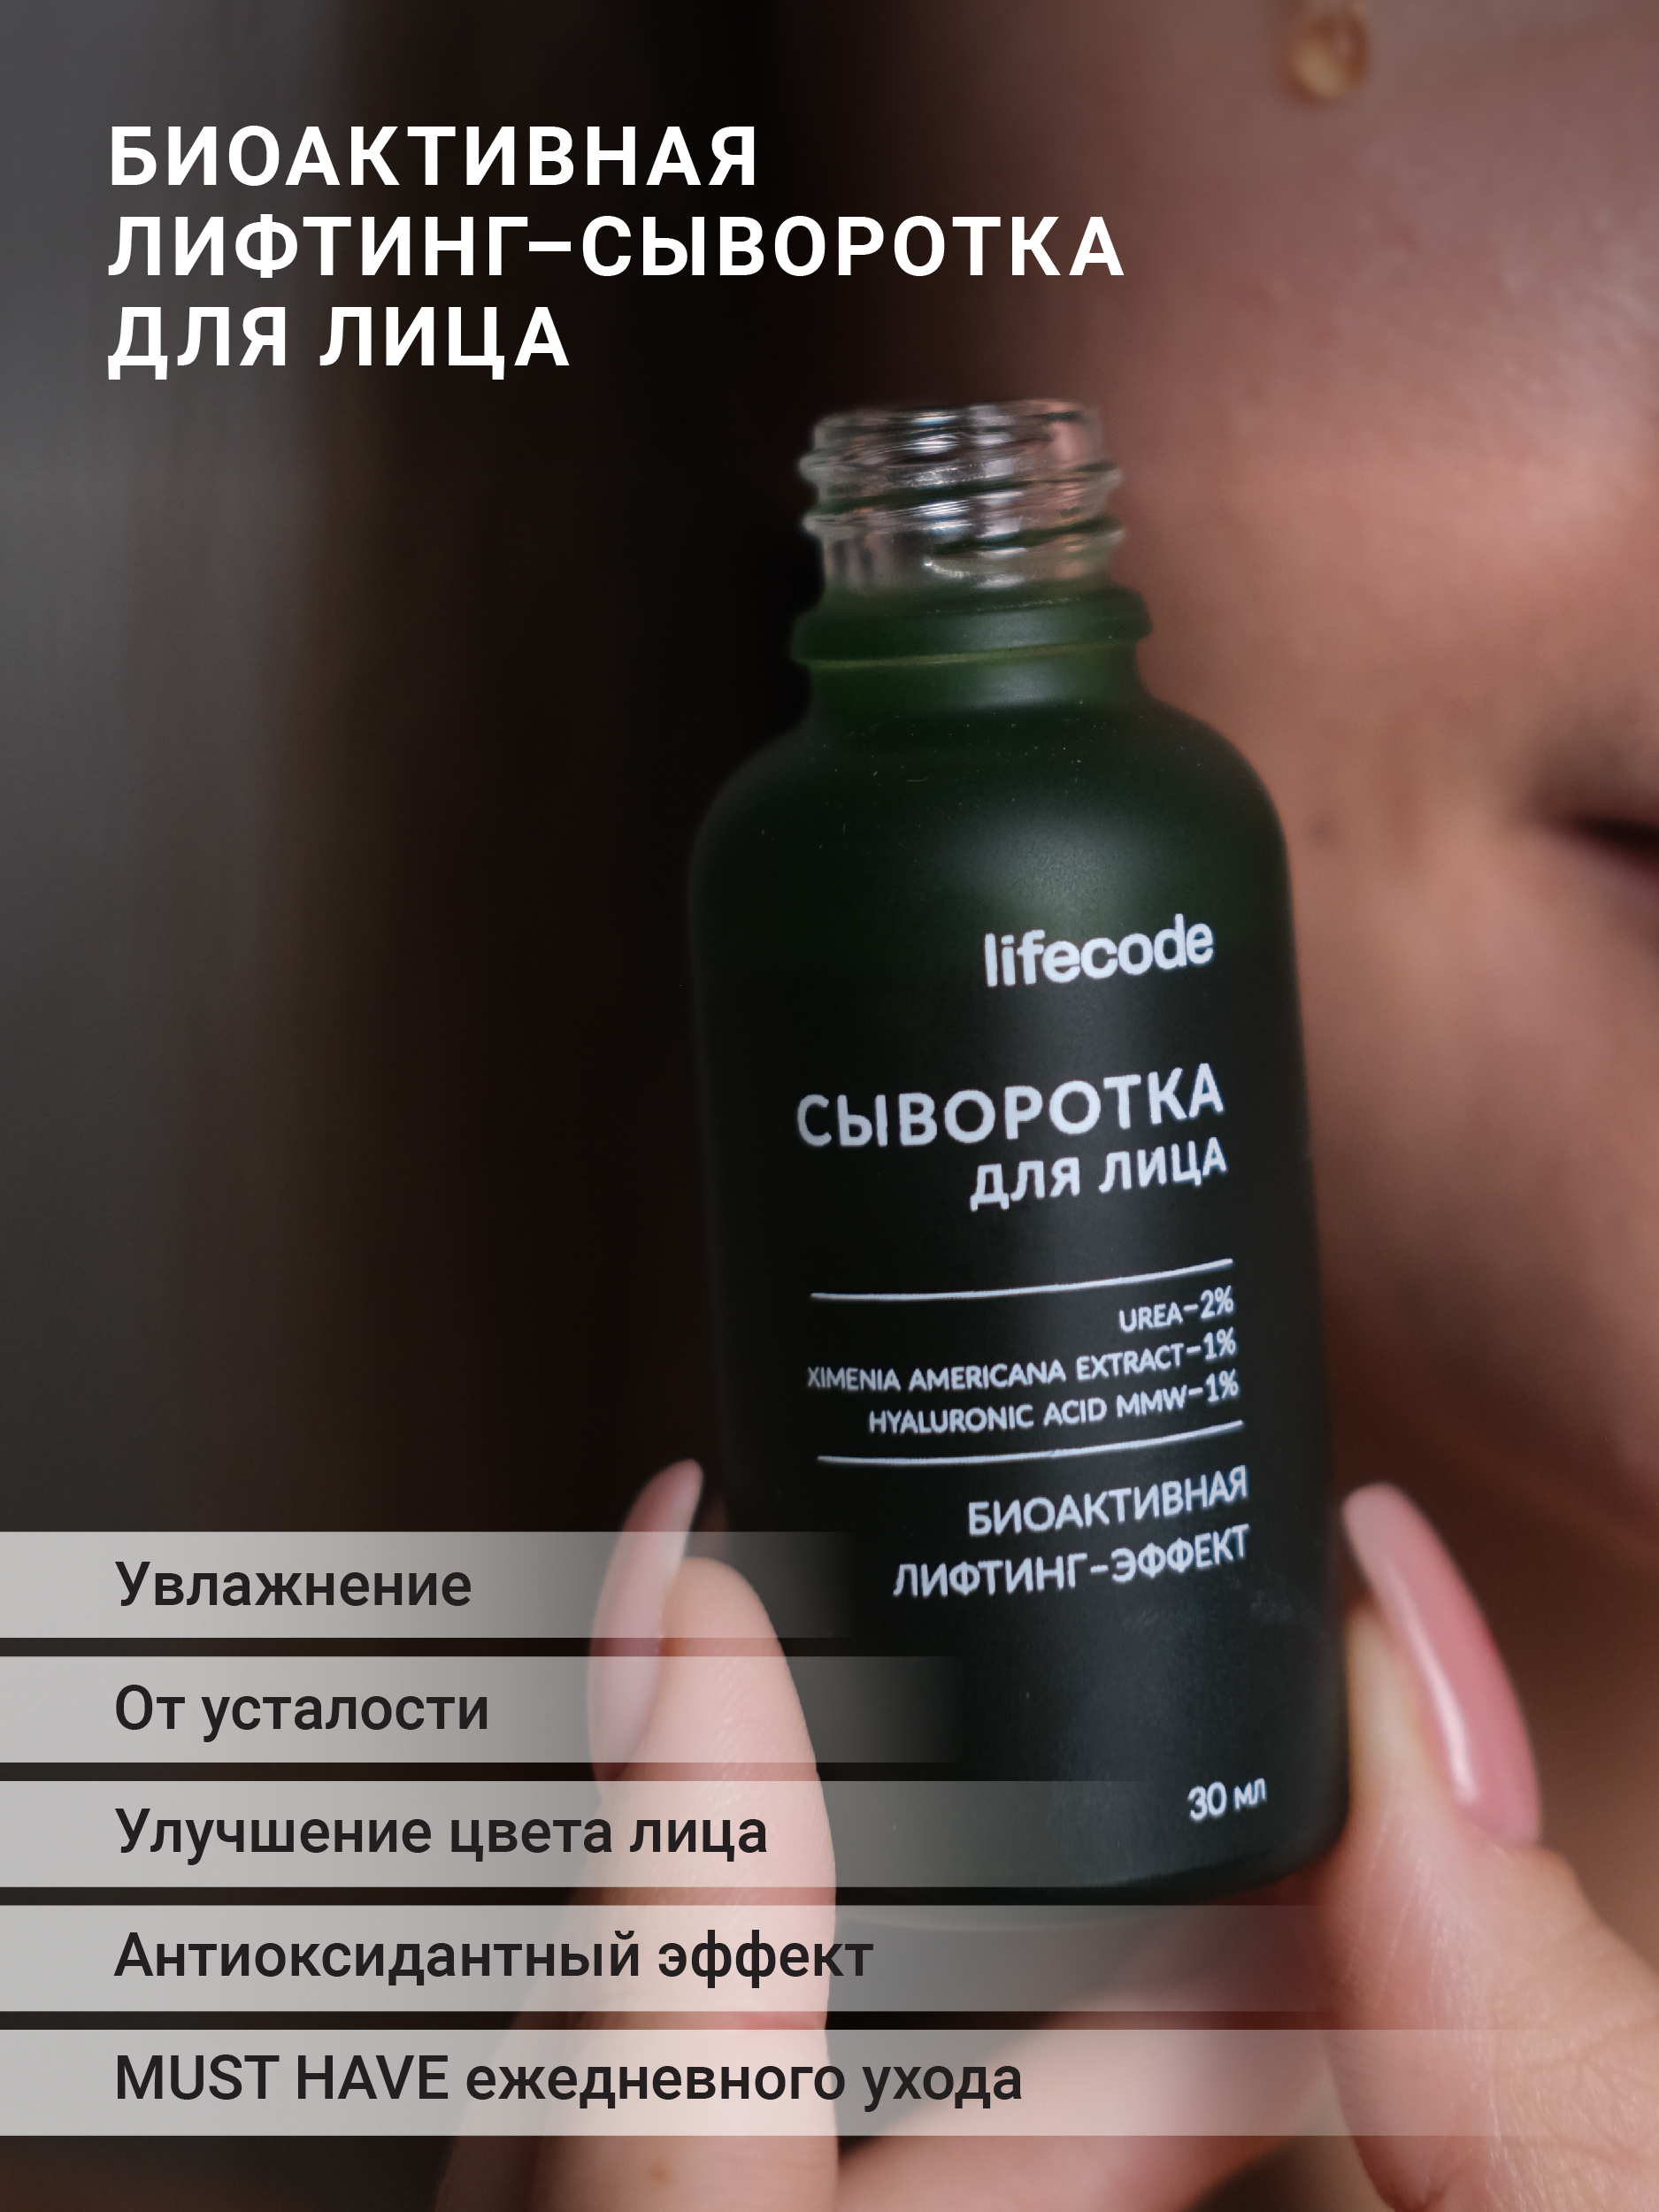 Сыворотка для лица LIFECODE с витамином C и гиалуроновой кислотой, биоактивная биоактивная лифтинг сыворотка для лица на основе живого коллагена